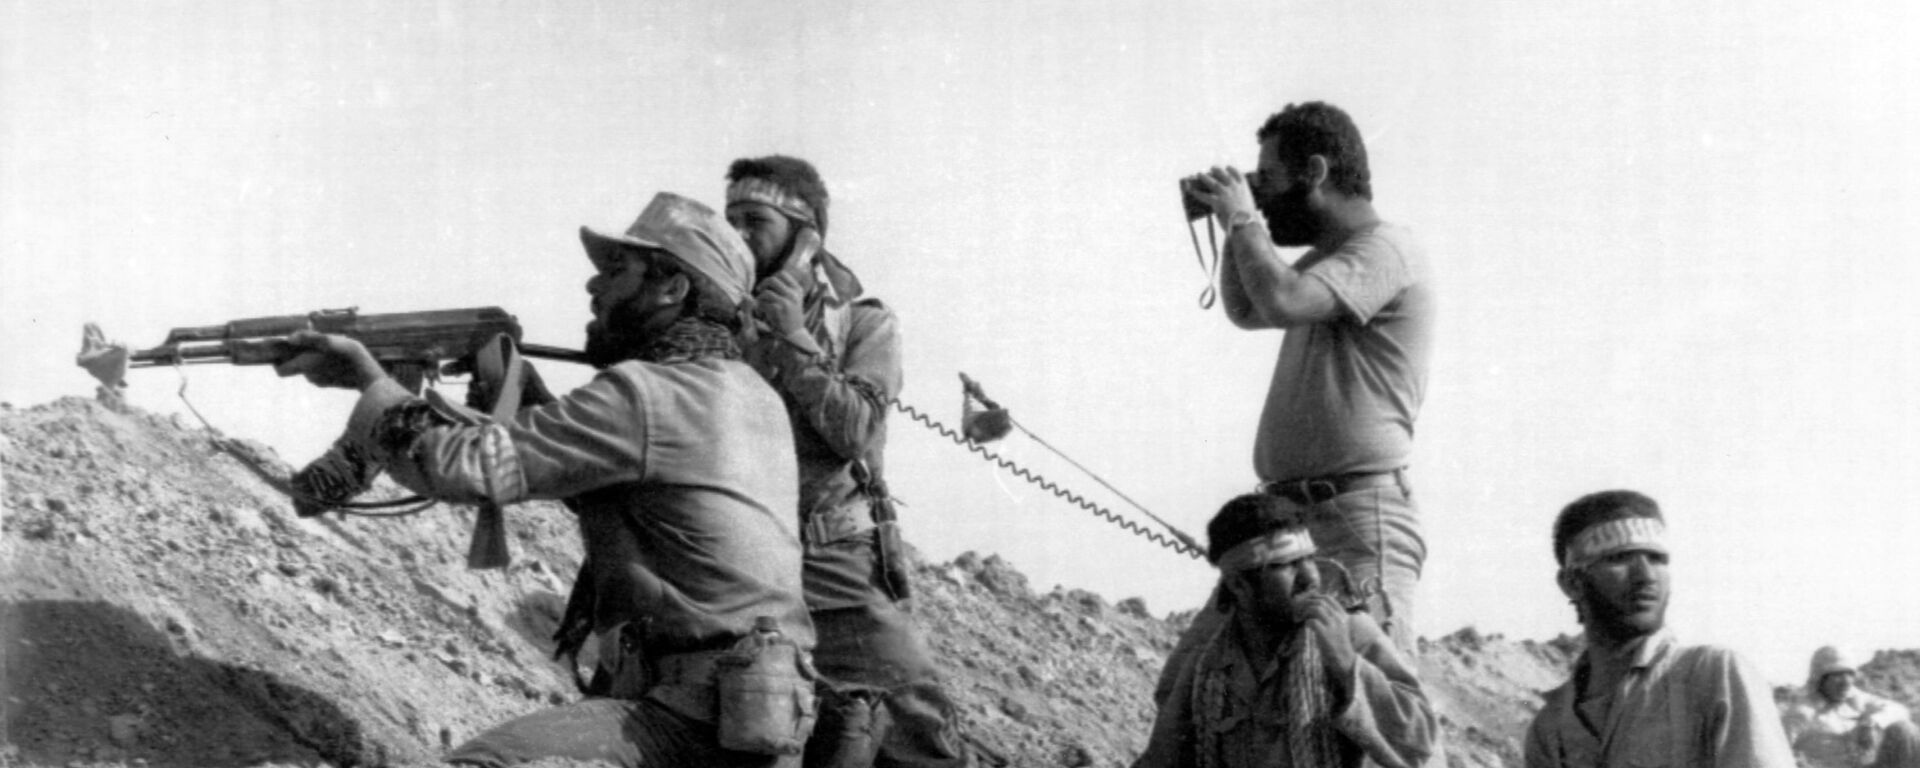 Soldados iraníes durante la guerra con Irak - Sputnik Mundo, 1920, 22.09.2020